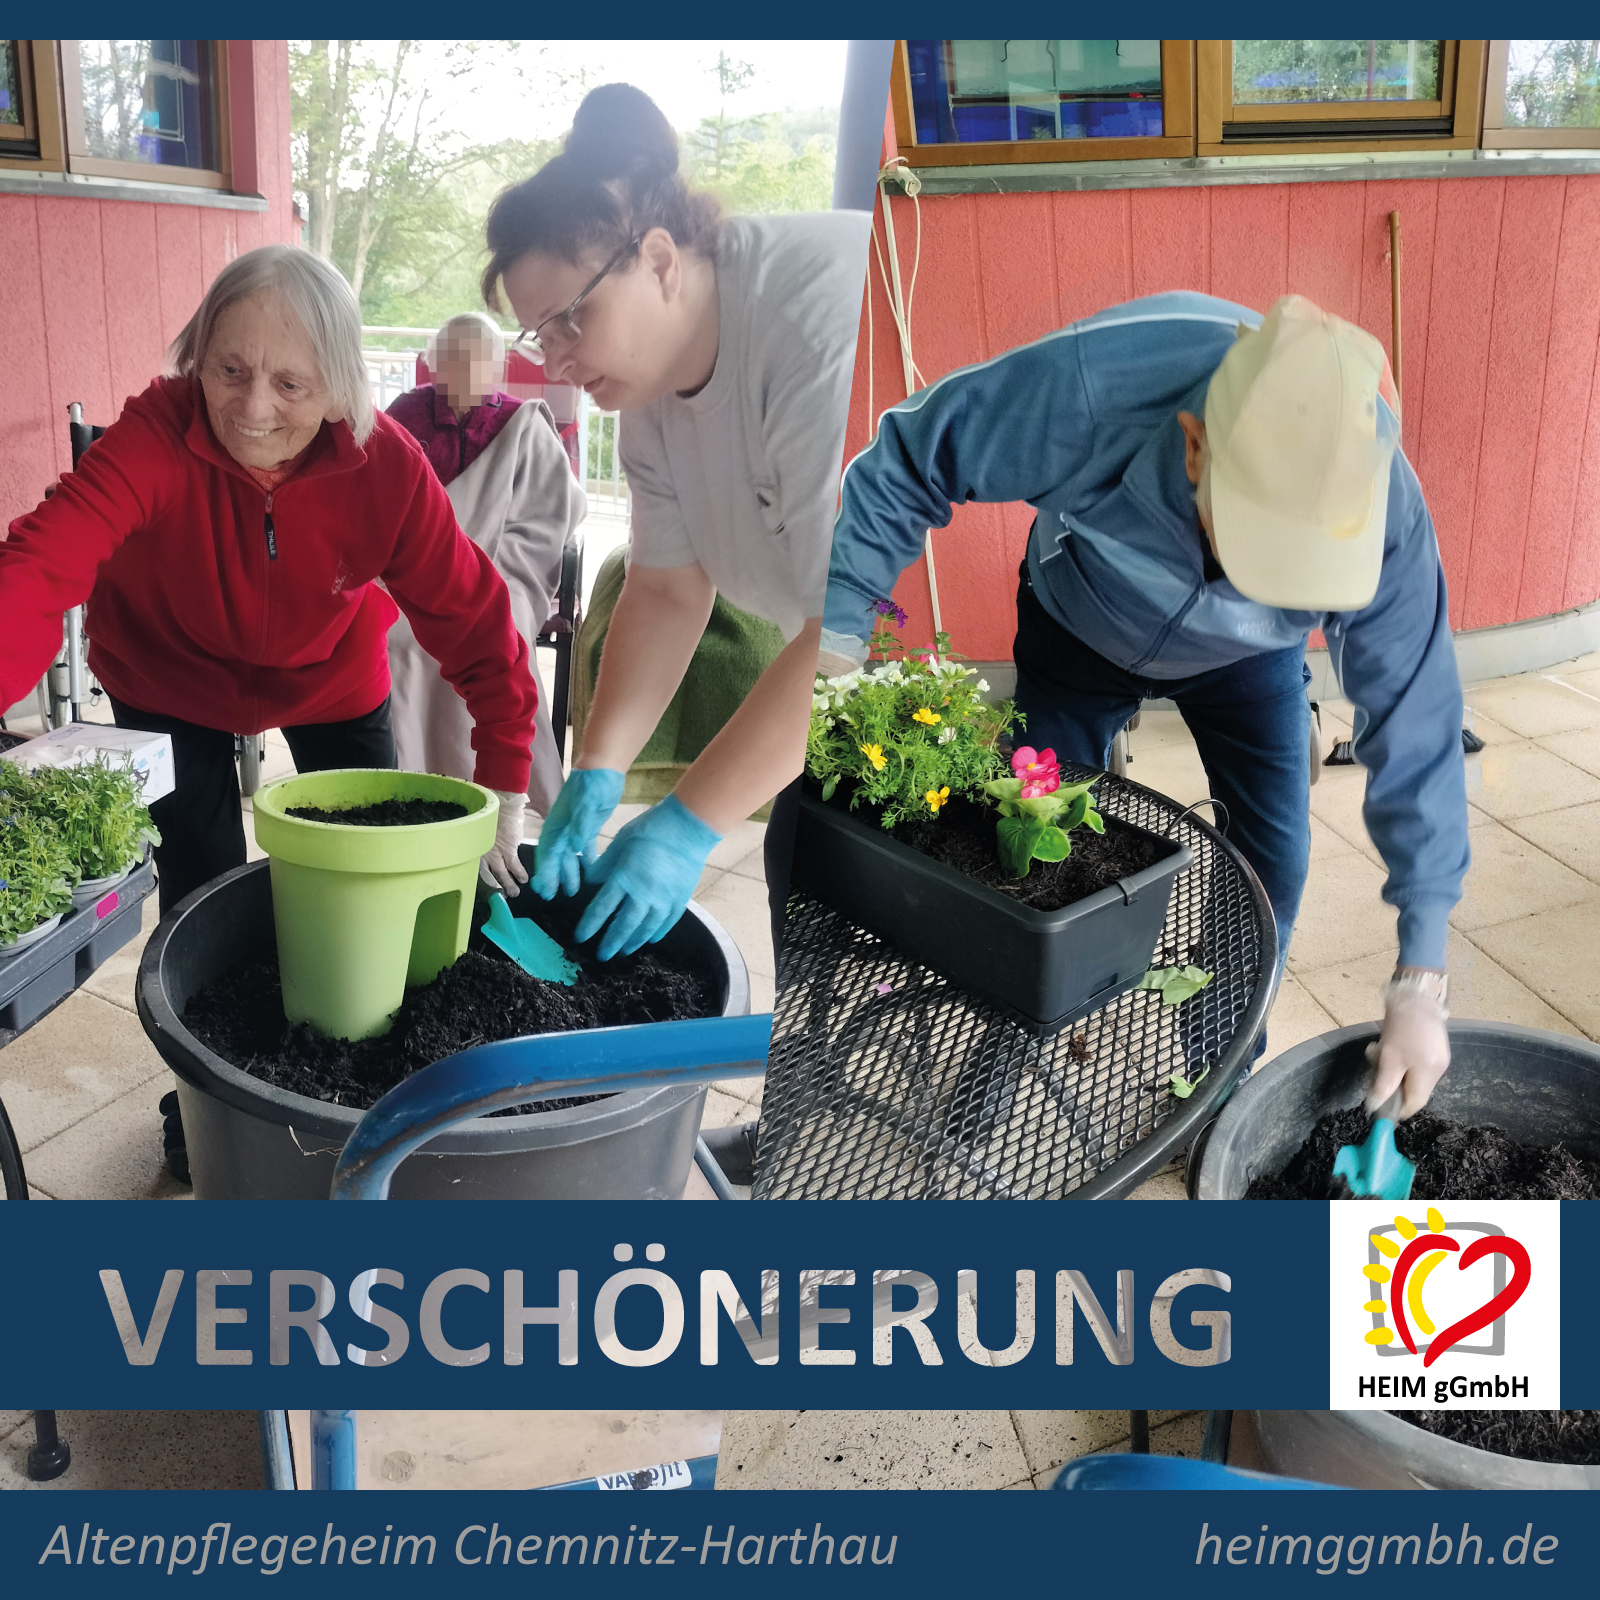 Das ist Teamwork statt EInsamkeit. Blumenpflanzen im Altenpflegeheim Chemnitz-Harthau der HEIM gemeinnützigen GmbH